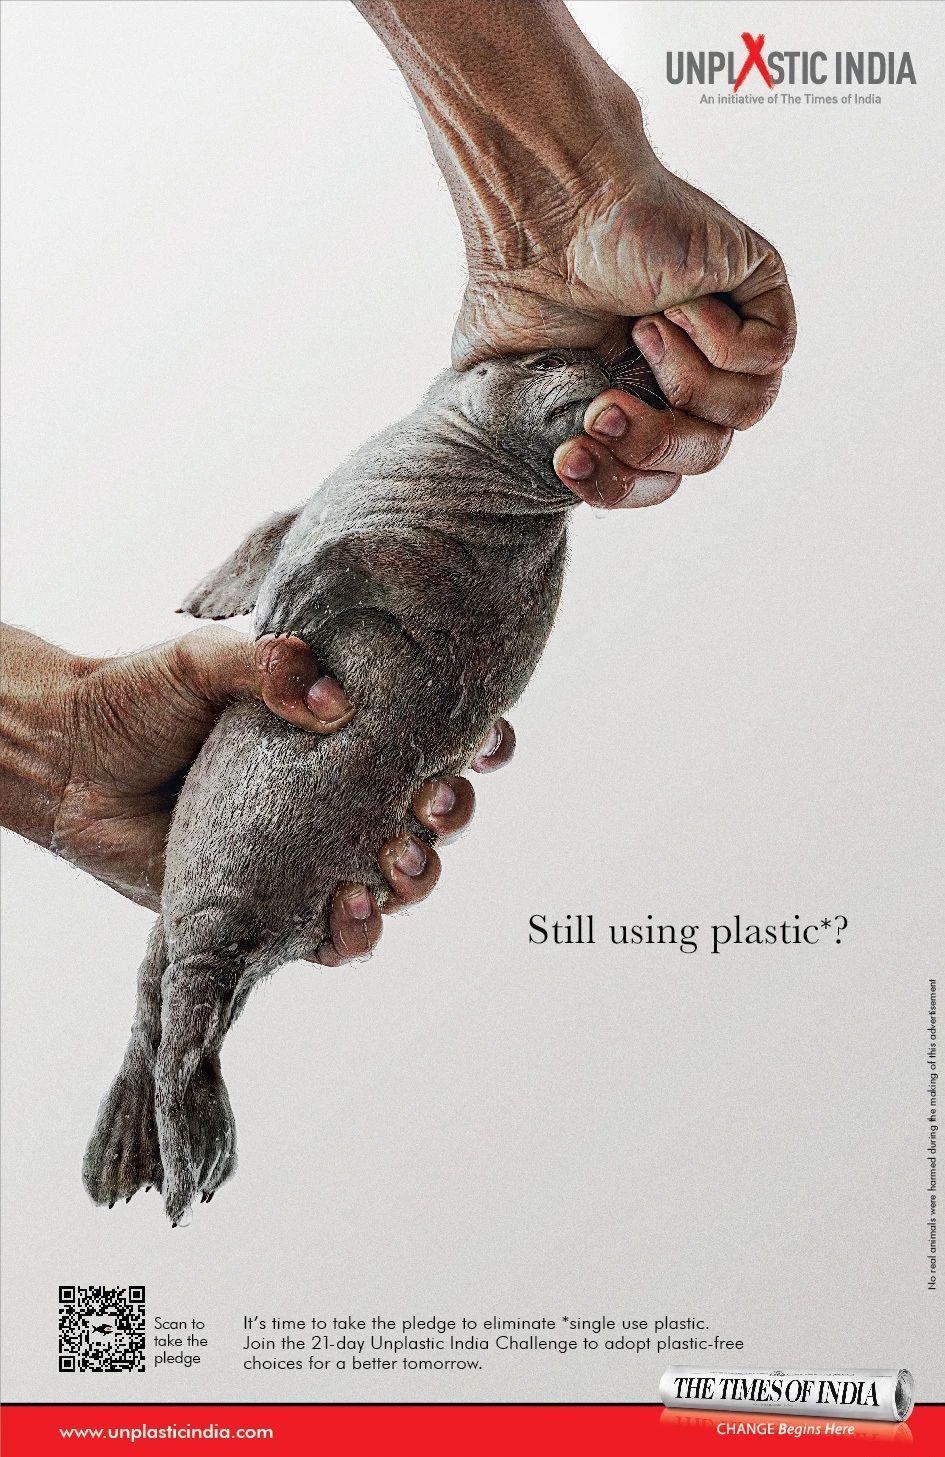 你还在使用塑料吗？看这组印度时报公益海报